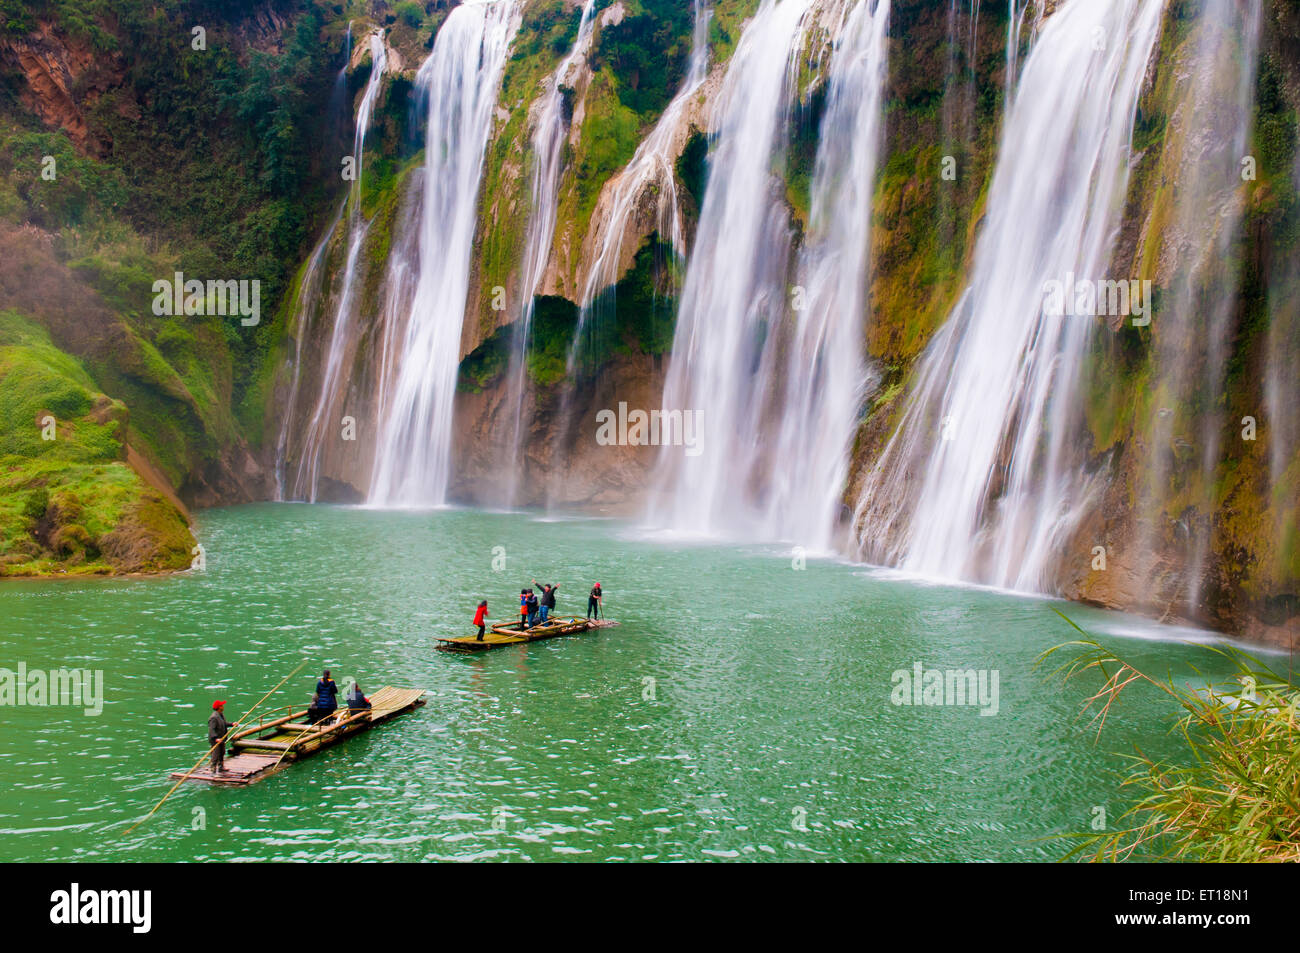 Tourists visit Jiulong waterfall in Luoping, China Stock Photo